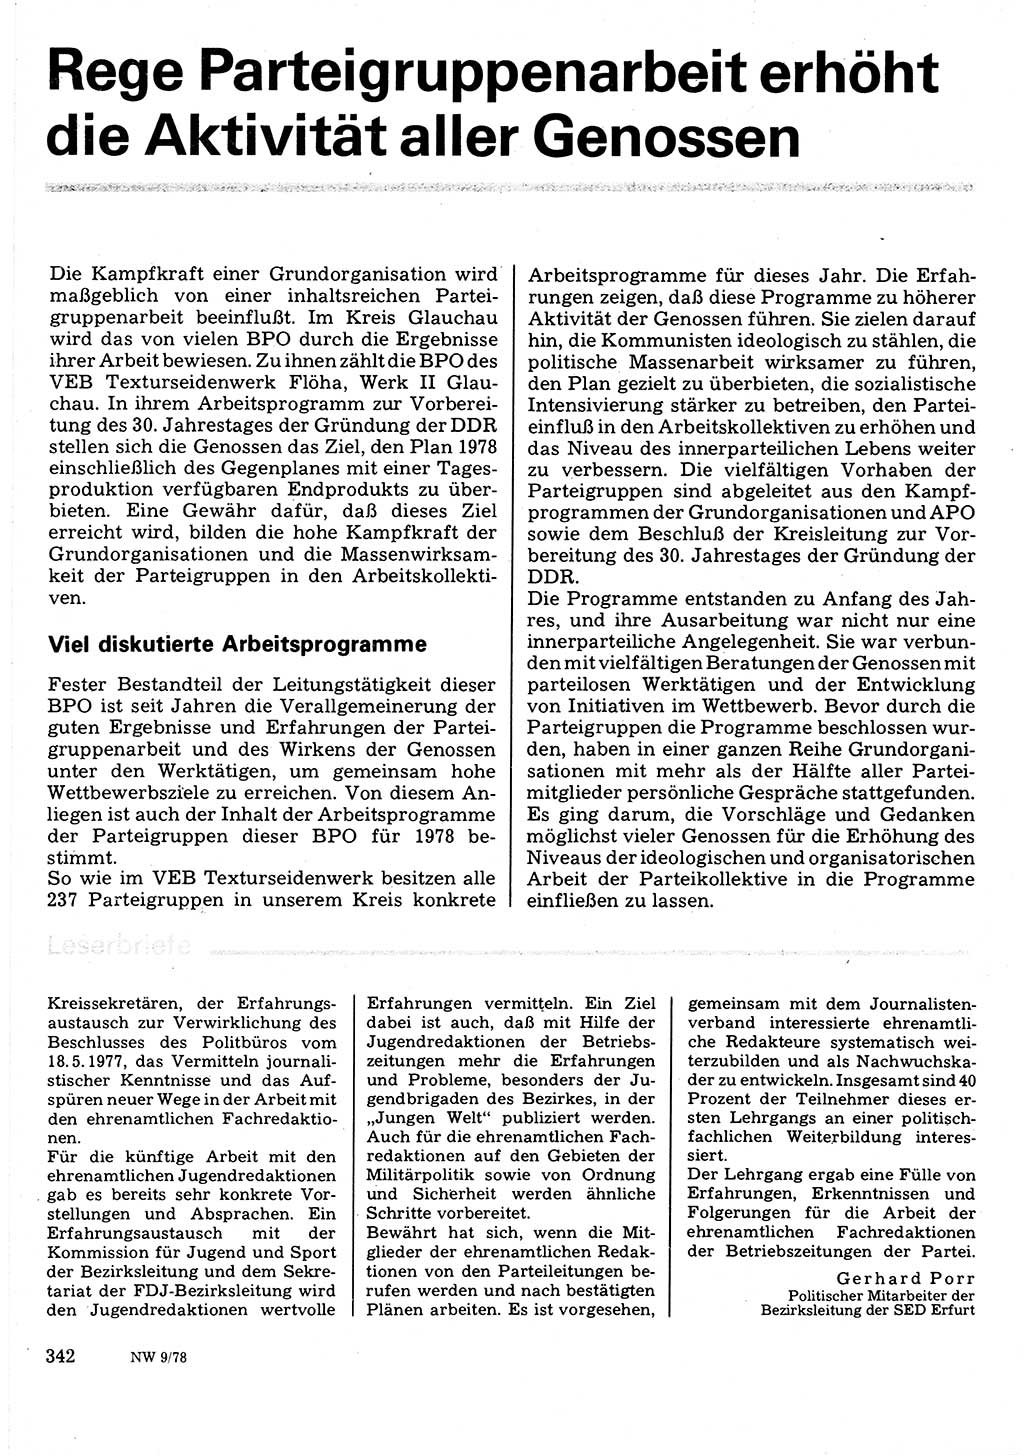 Neuer Weg (NW), Organ des Zentralkomitees (ZK) der SED (Sozialistische Einheitspartei Deutschlands) für Fragen des Parteilebens, 33. Jahrgang [Deutsche Demokratische Republik (DDR)] 1978, Seite 342 (NW ZK SED DDR 1978, S. 342)